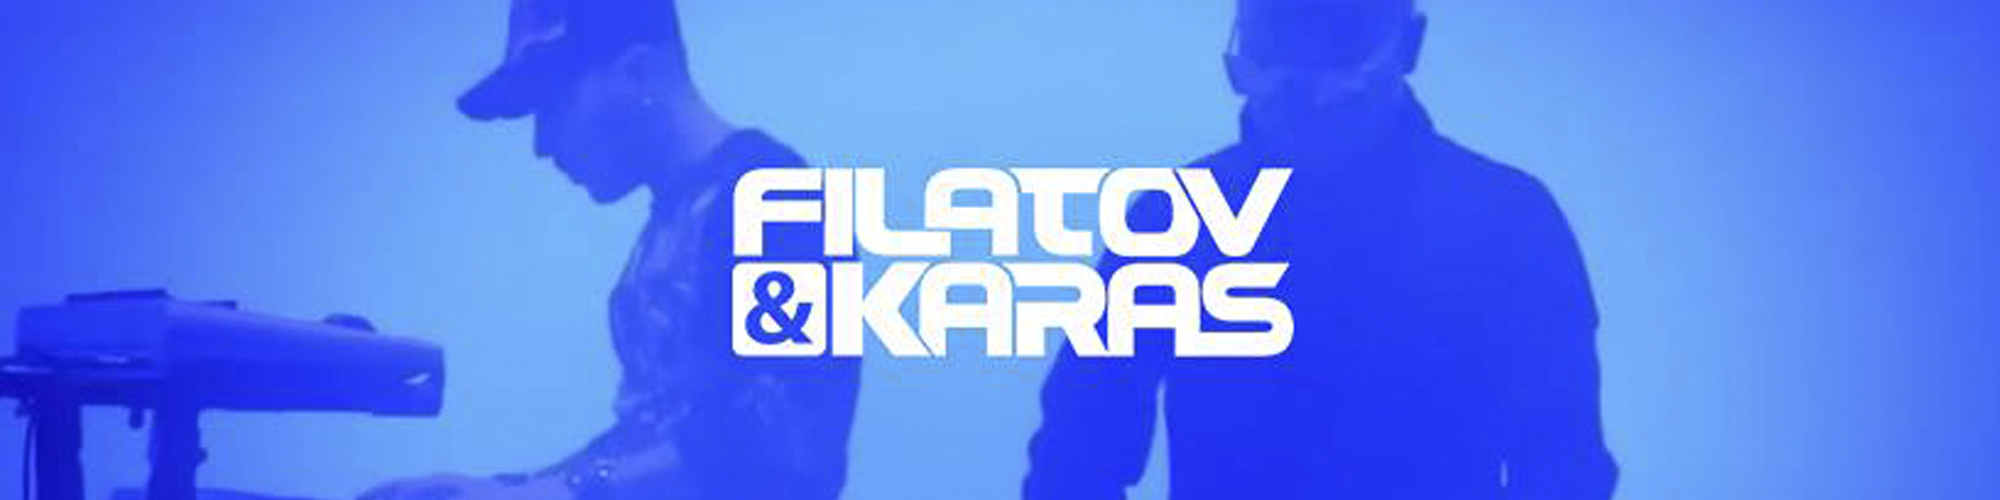 Brother filatov. Filatov Karas картинки. Filatov and Karas лого. Filatov and Karas надпись.